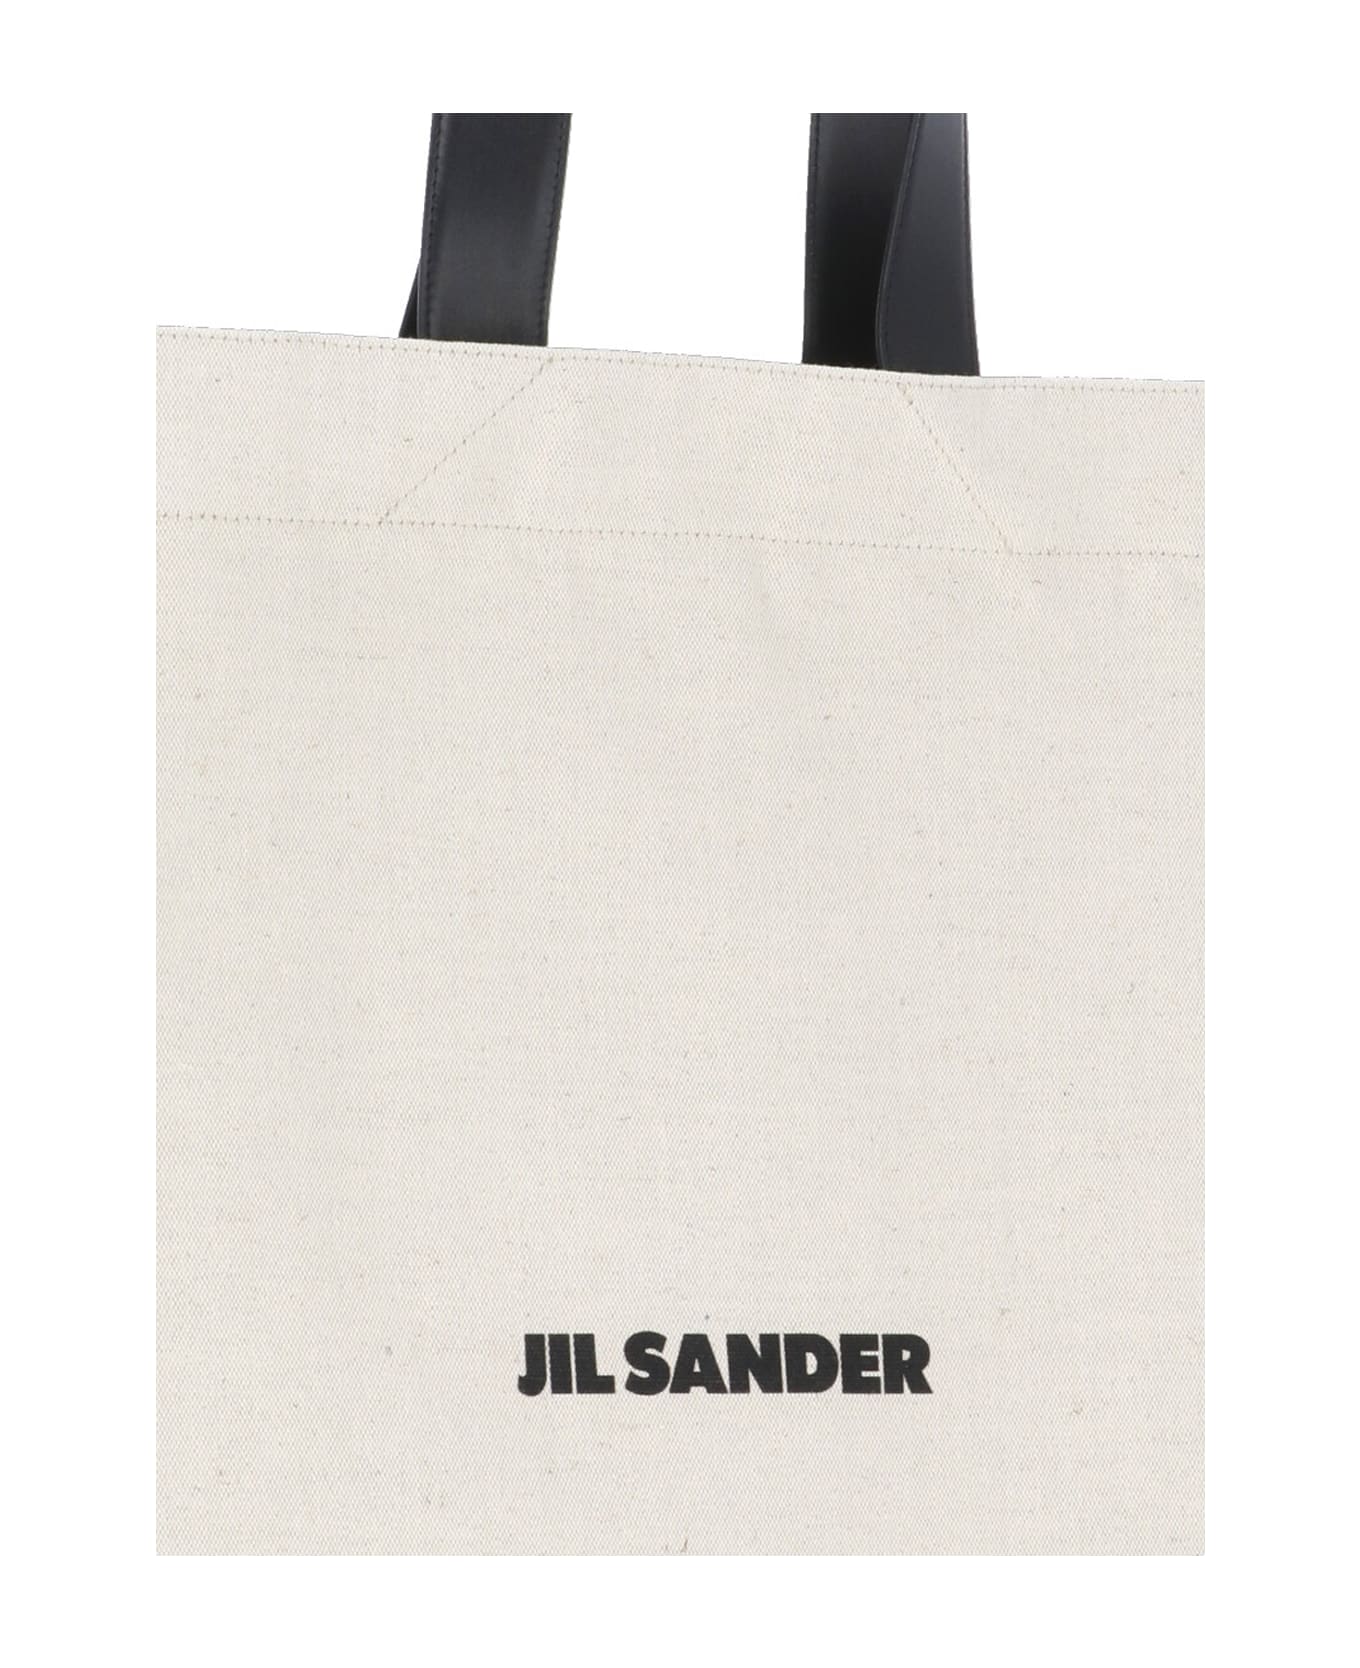 Jil Sander Book Tote Shopping Bag - Beige トートバッグ